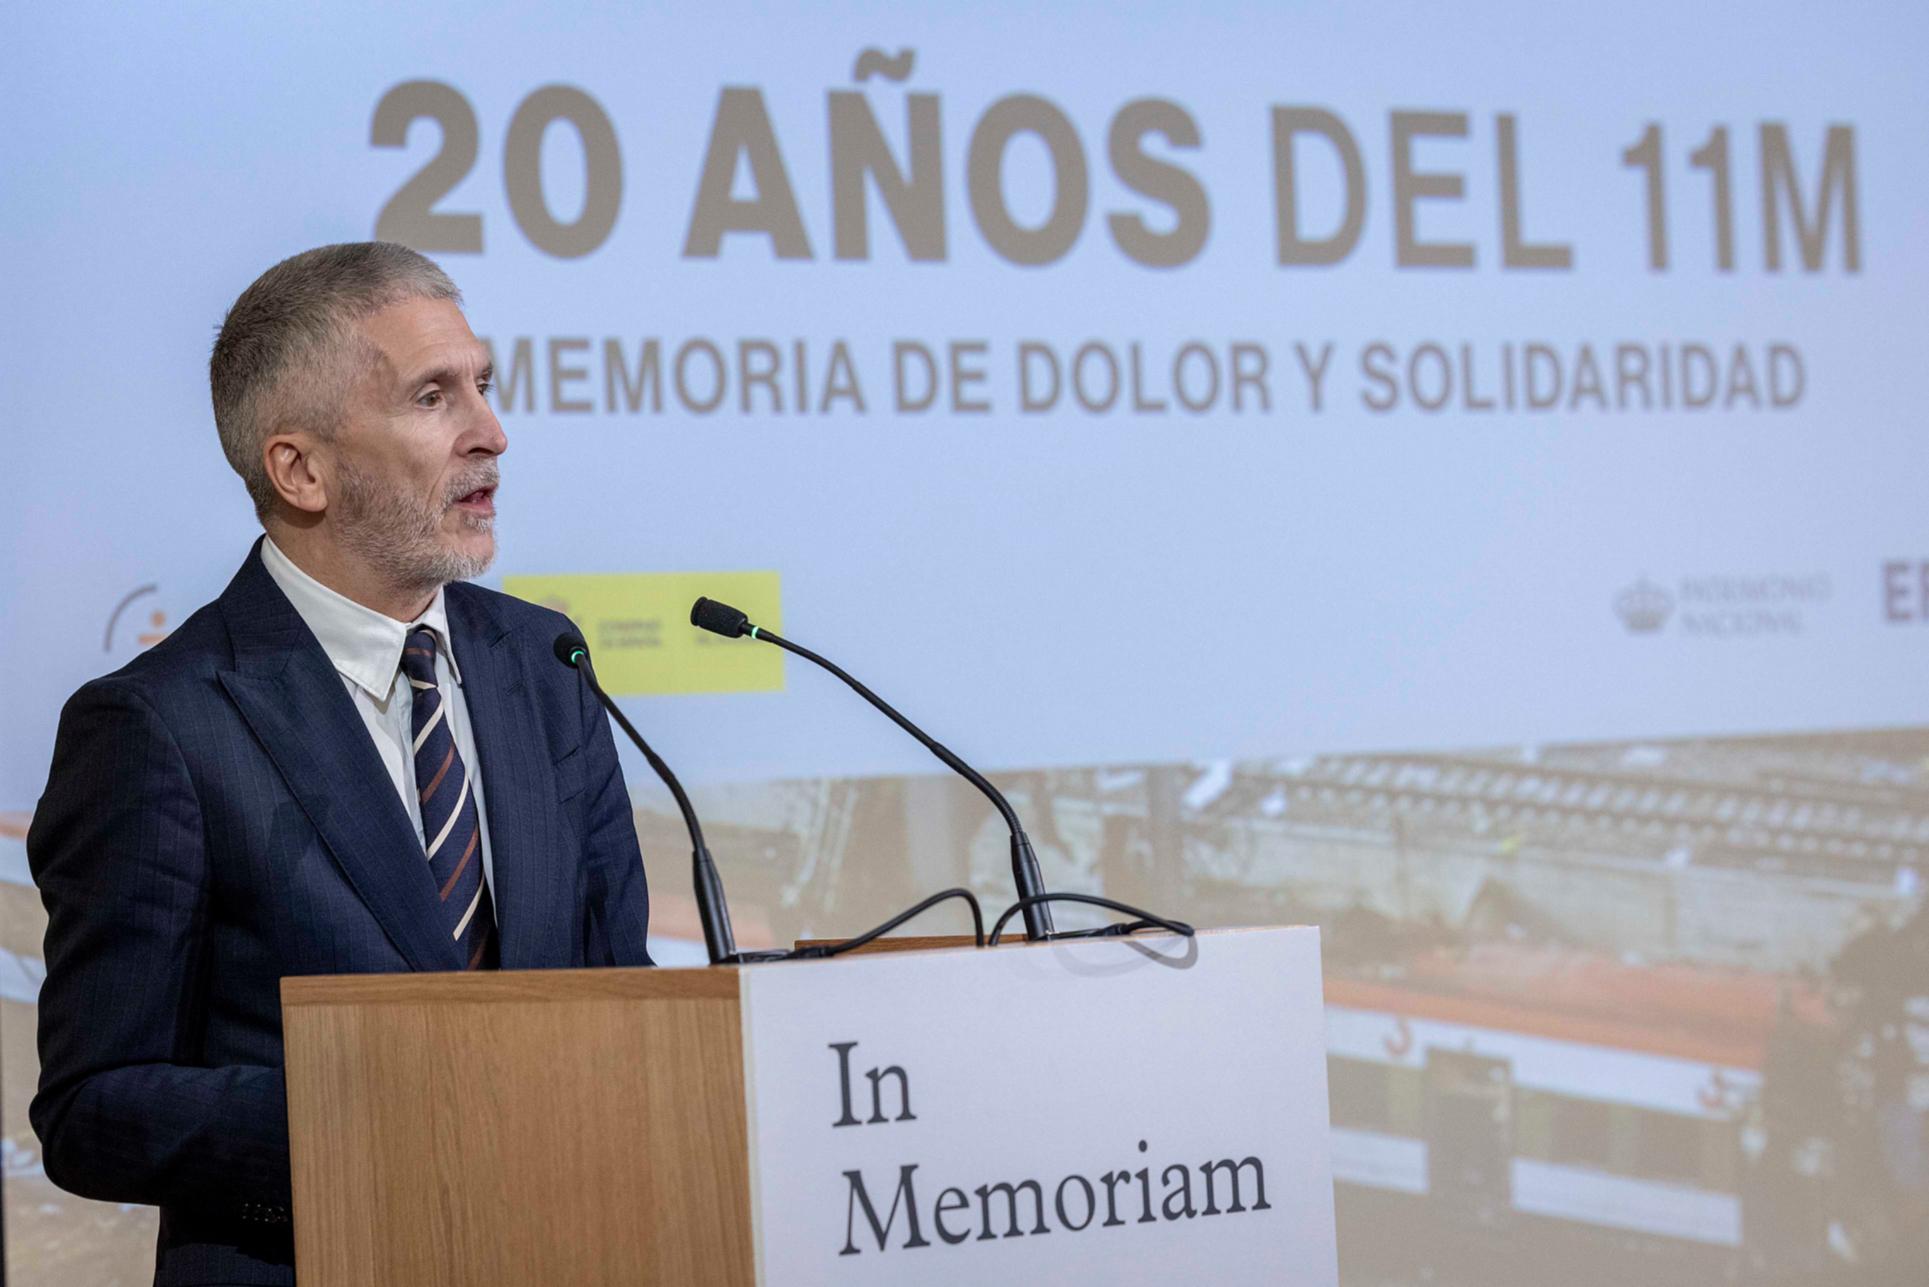 Grande-Marlaska: “El 11M, la sociedad española volvió a demostrar que no hay terrorismo capaz de doblegarla”